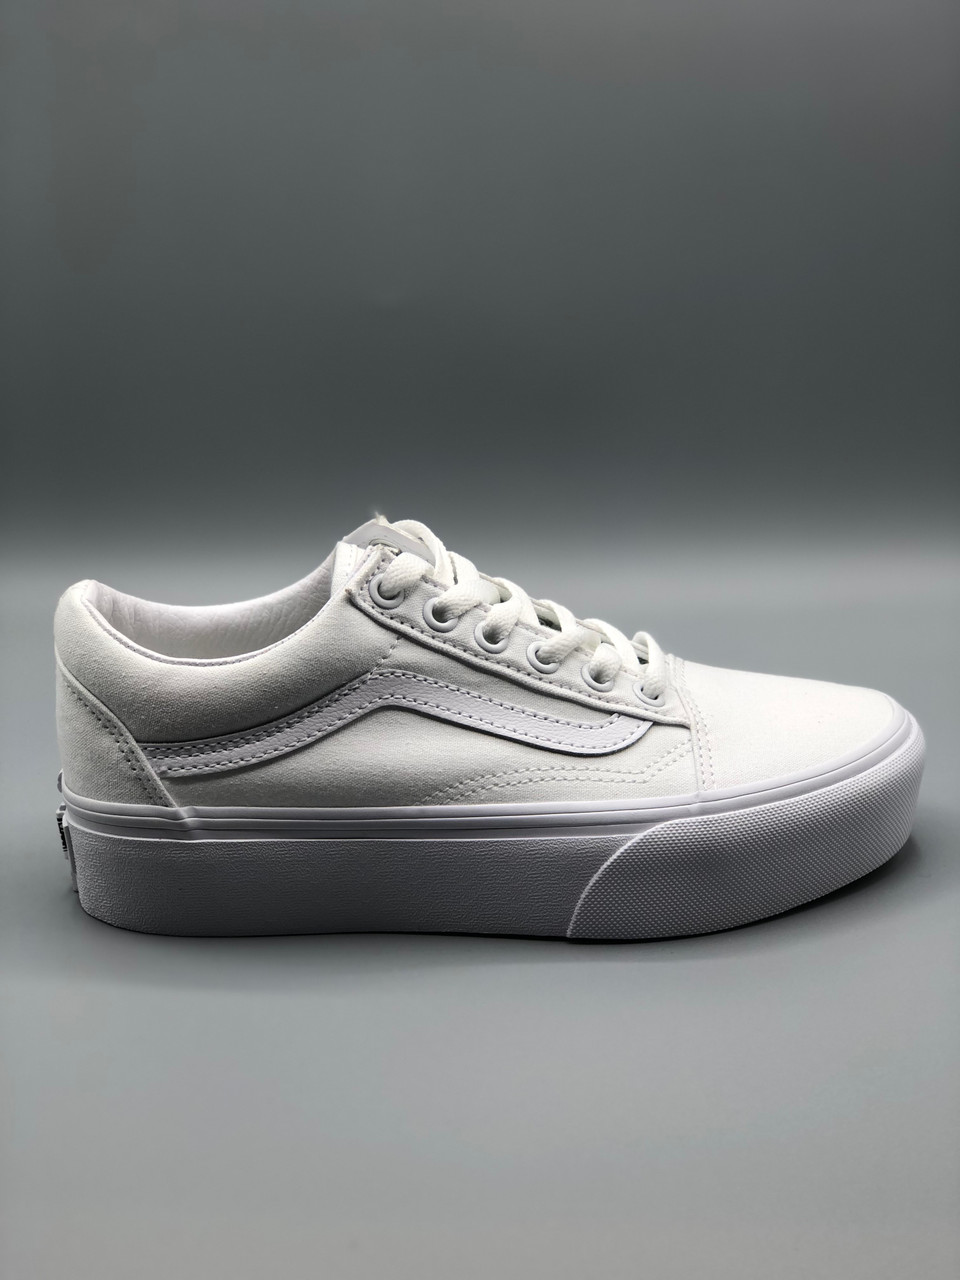 shoes Vans Old Skool Platform - Checkerboard/Black/True White 